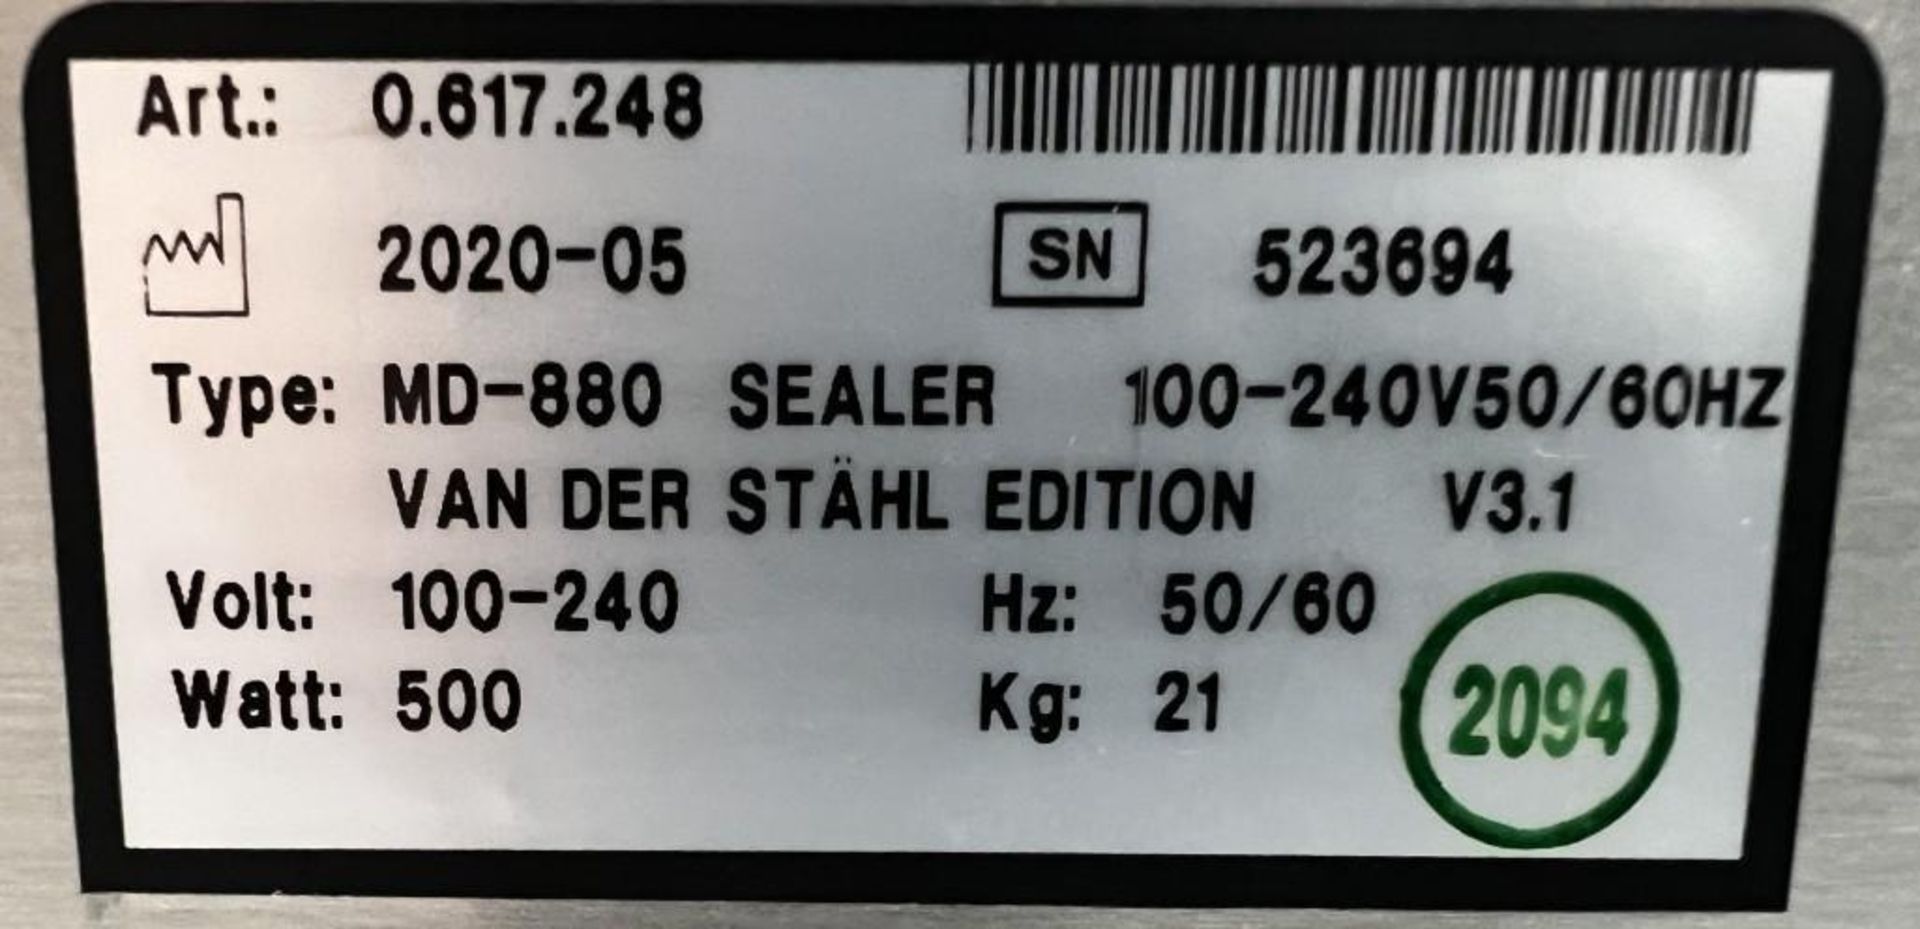 Van Der Stahl MD Series Pouch Sealer, Model MD-880, Serial# 523694, Built 05-2020. - Image 6 of 6